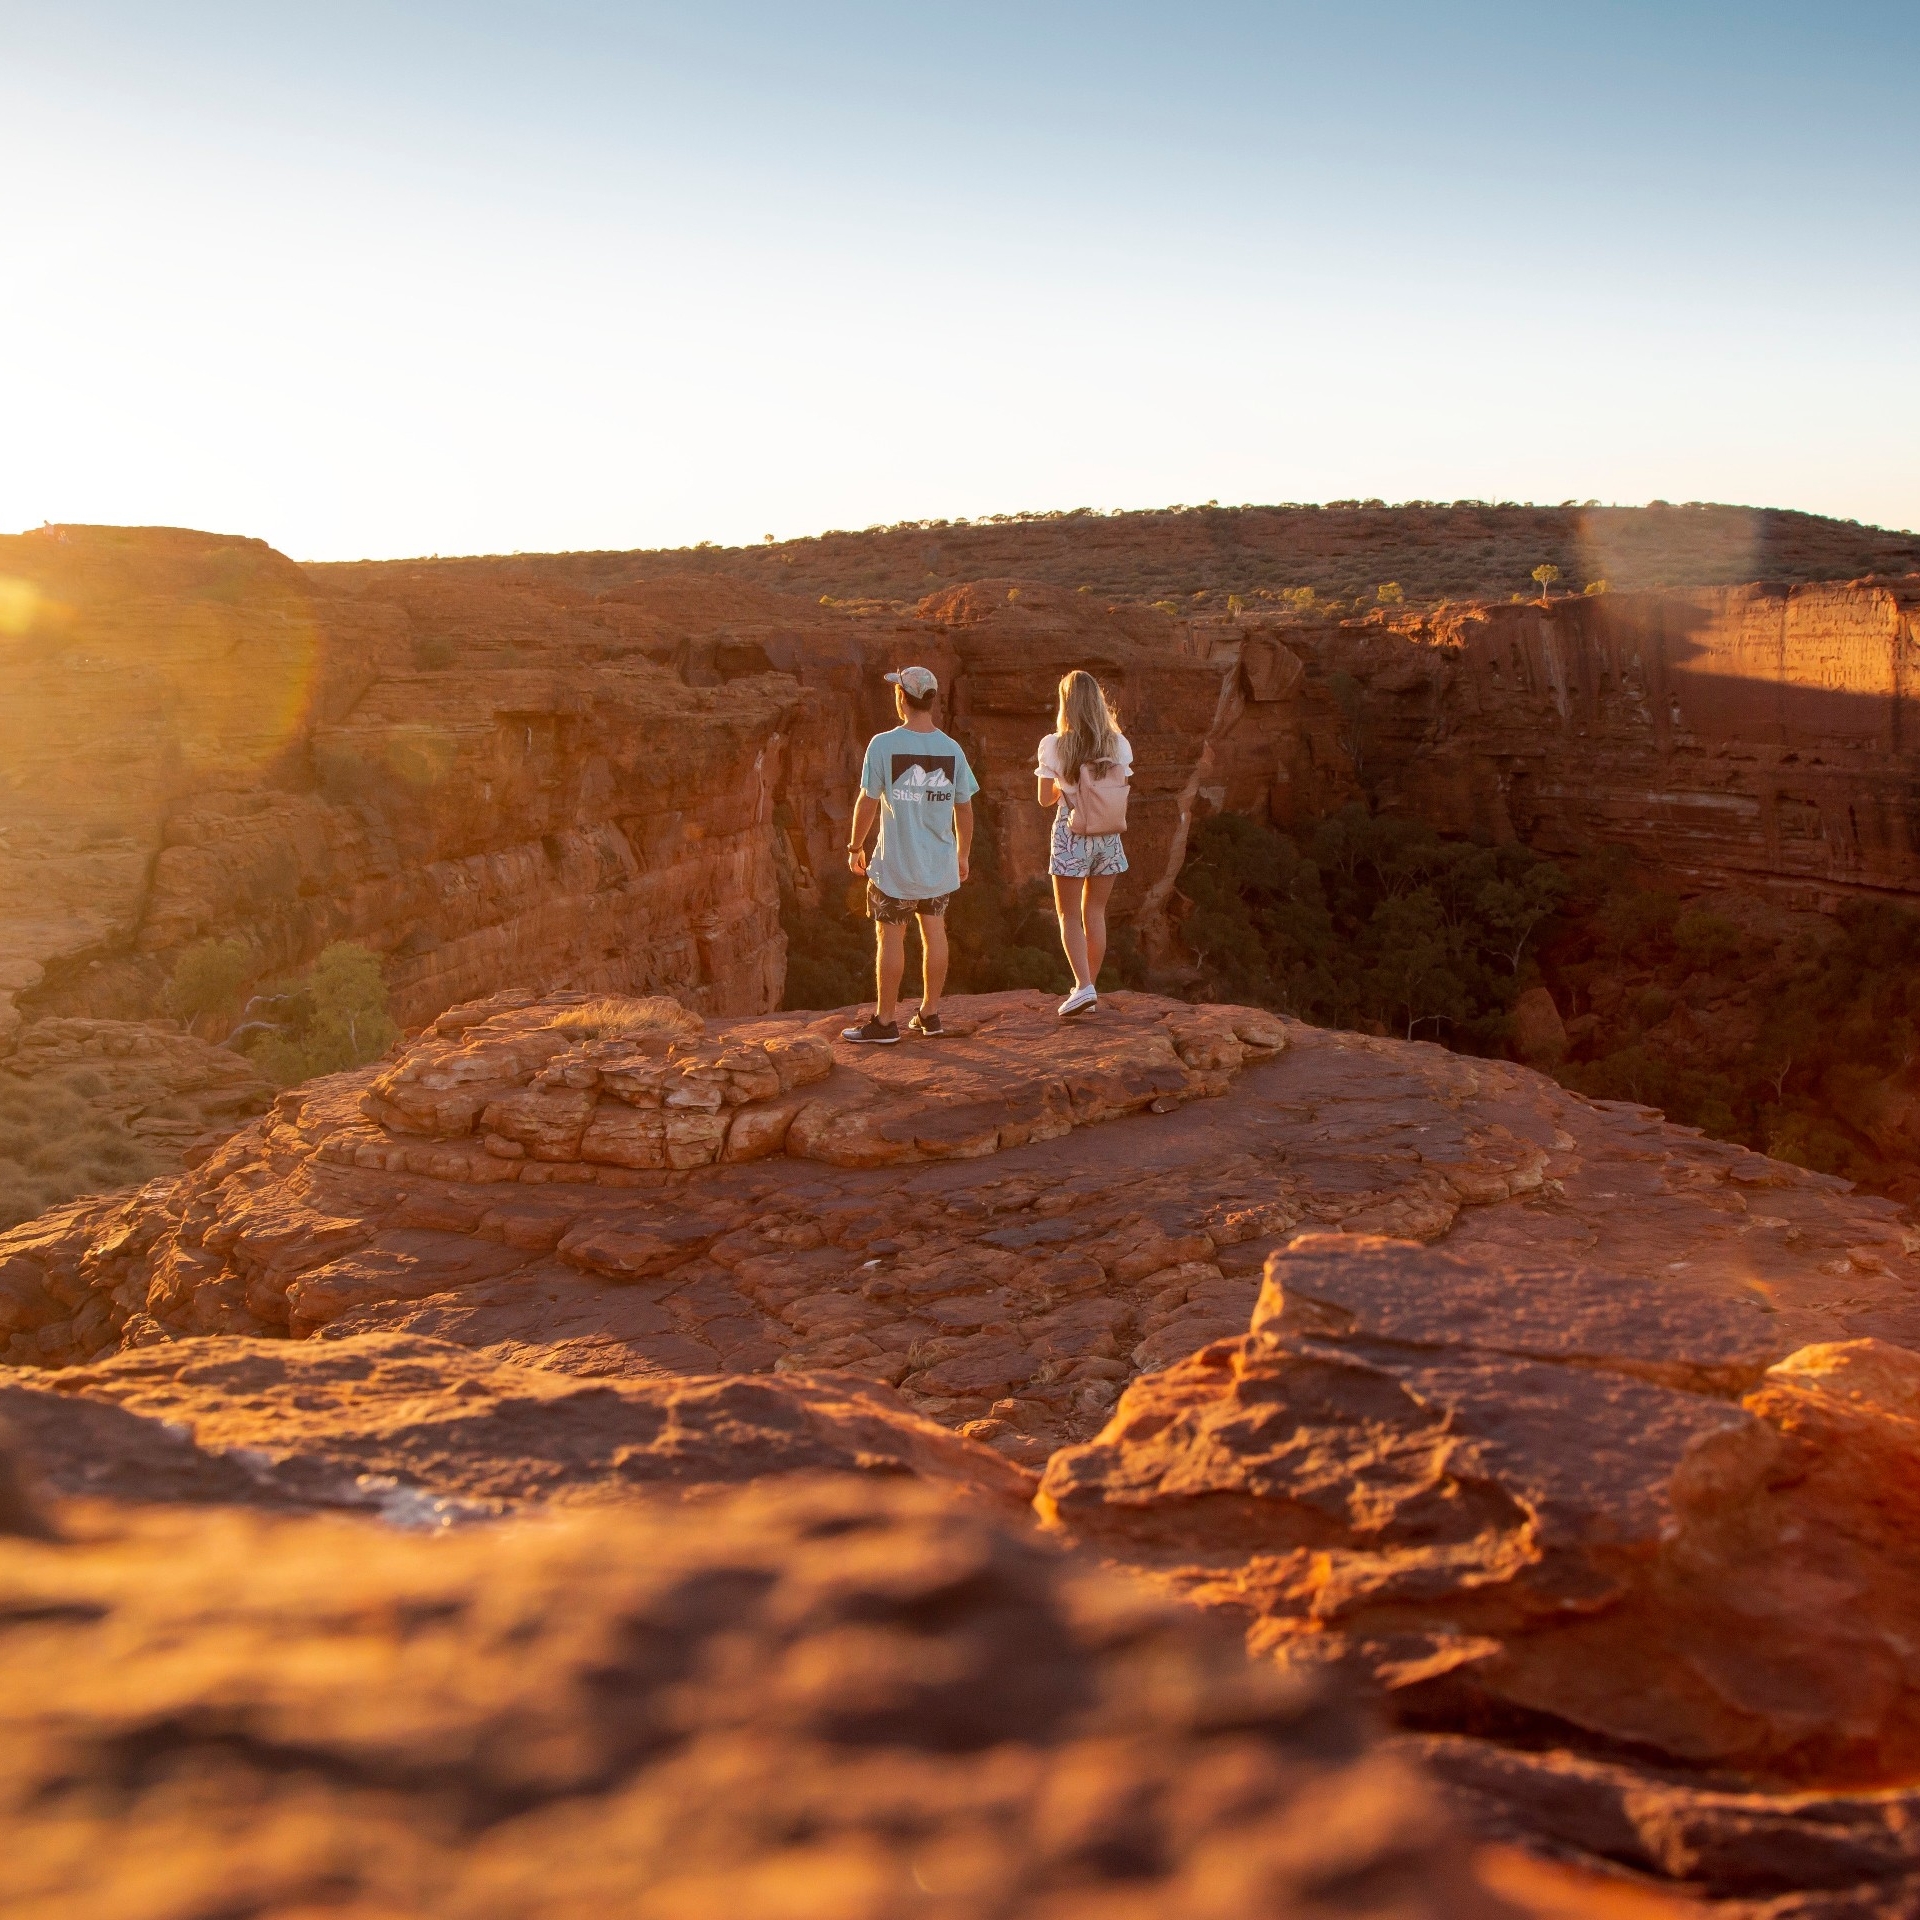 两个人站在国王峡谷边缘 © 澳大利亚旅游局版权所有